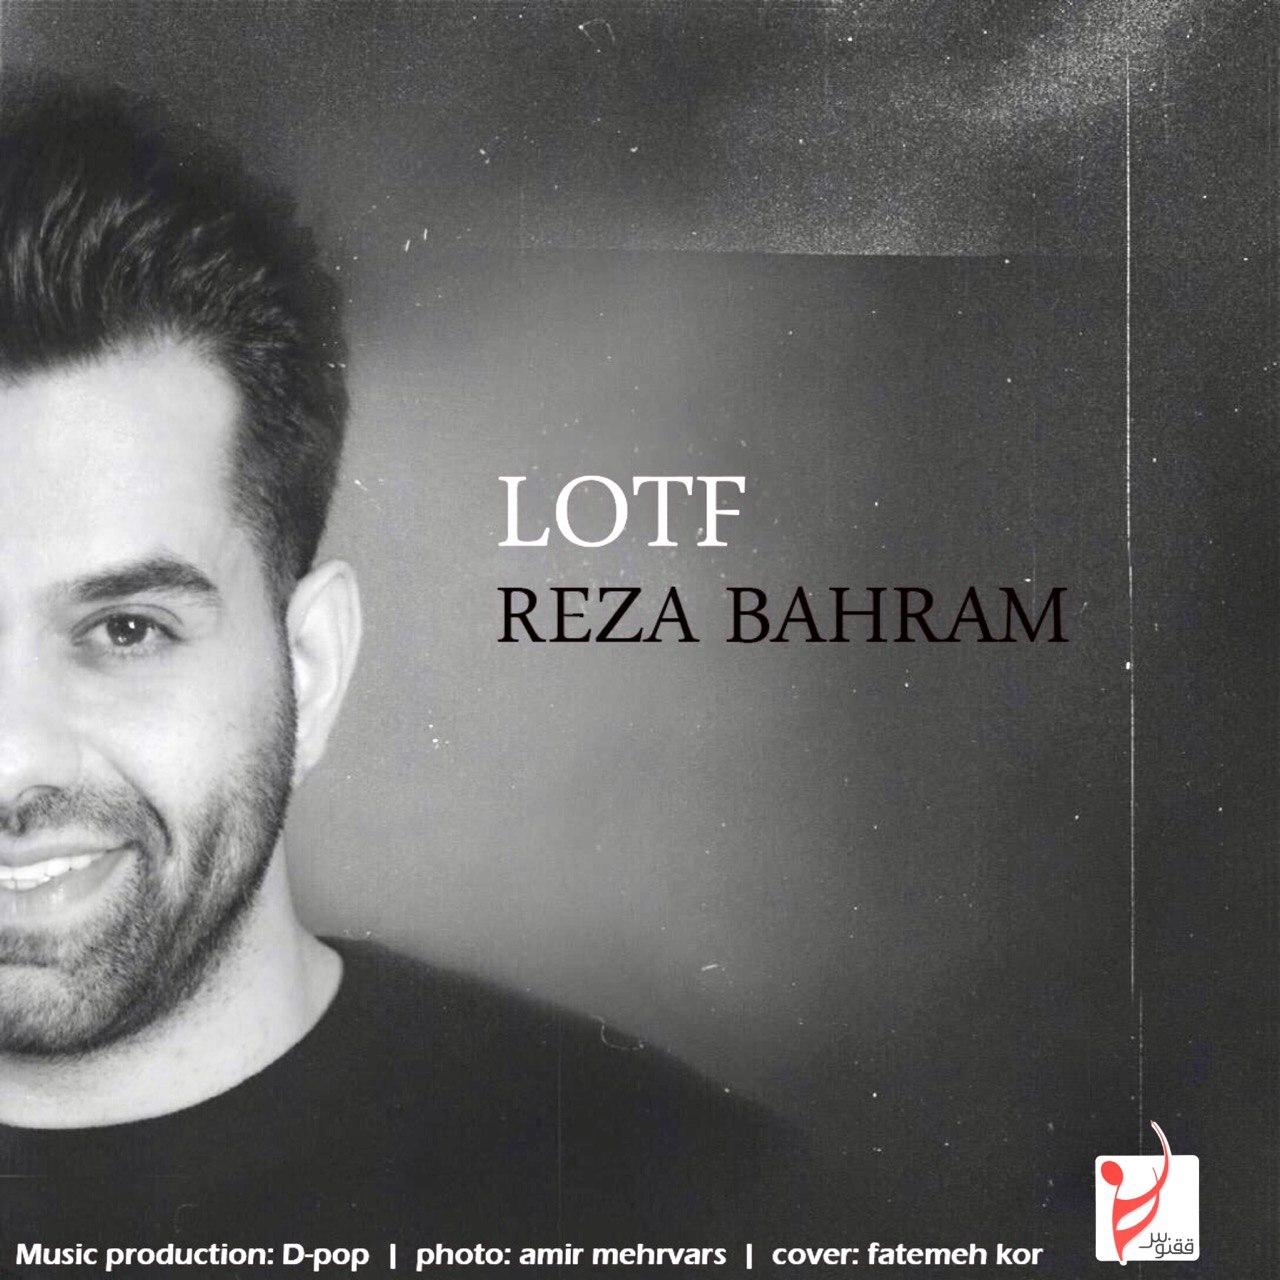  دانلود آهنگ جدید رضا بهرام - لطف | Download New Music By Reza Bahram - Lotf